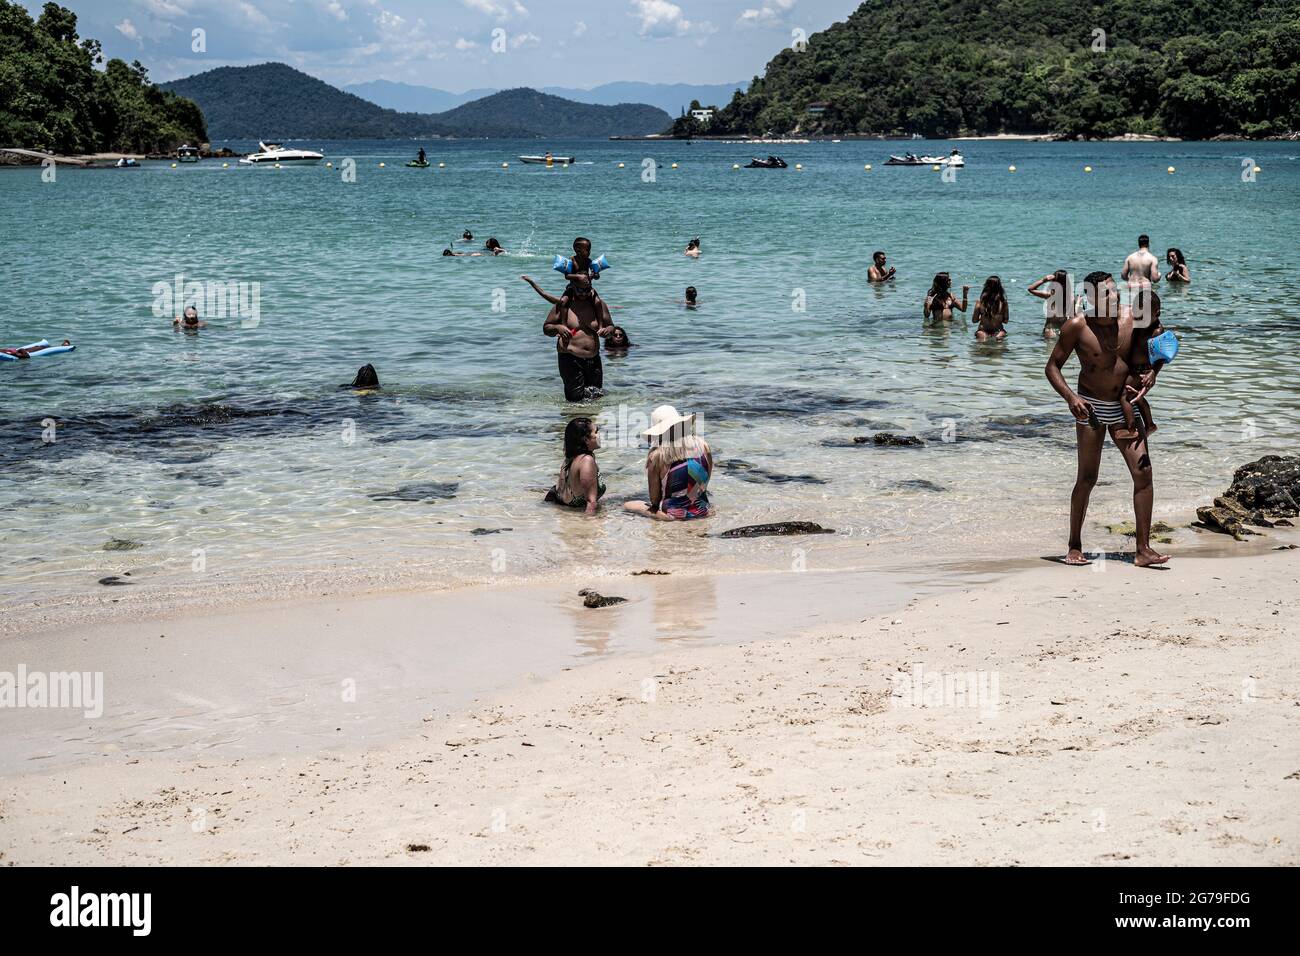 La vie sur la plage de Big Island, Ilha grande , Rio de Janeiro - Brésil Banque D'Images